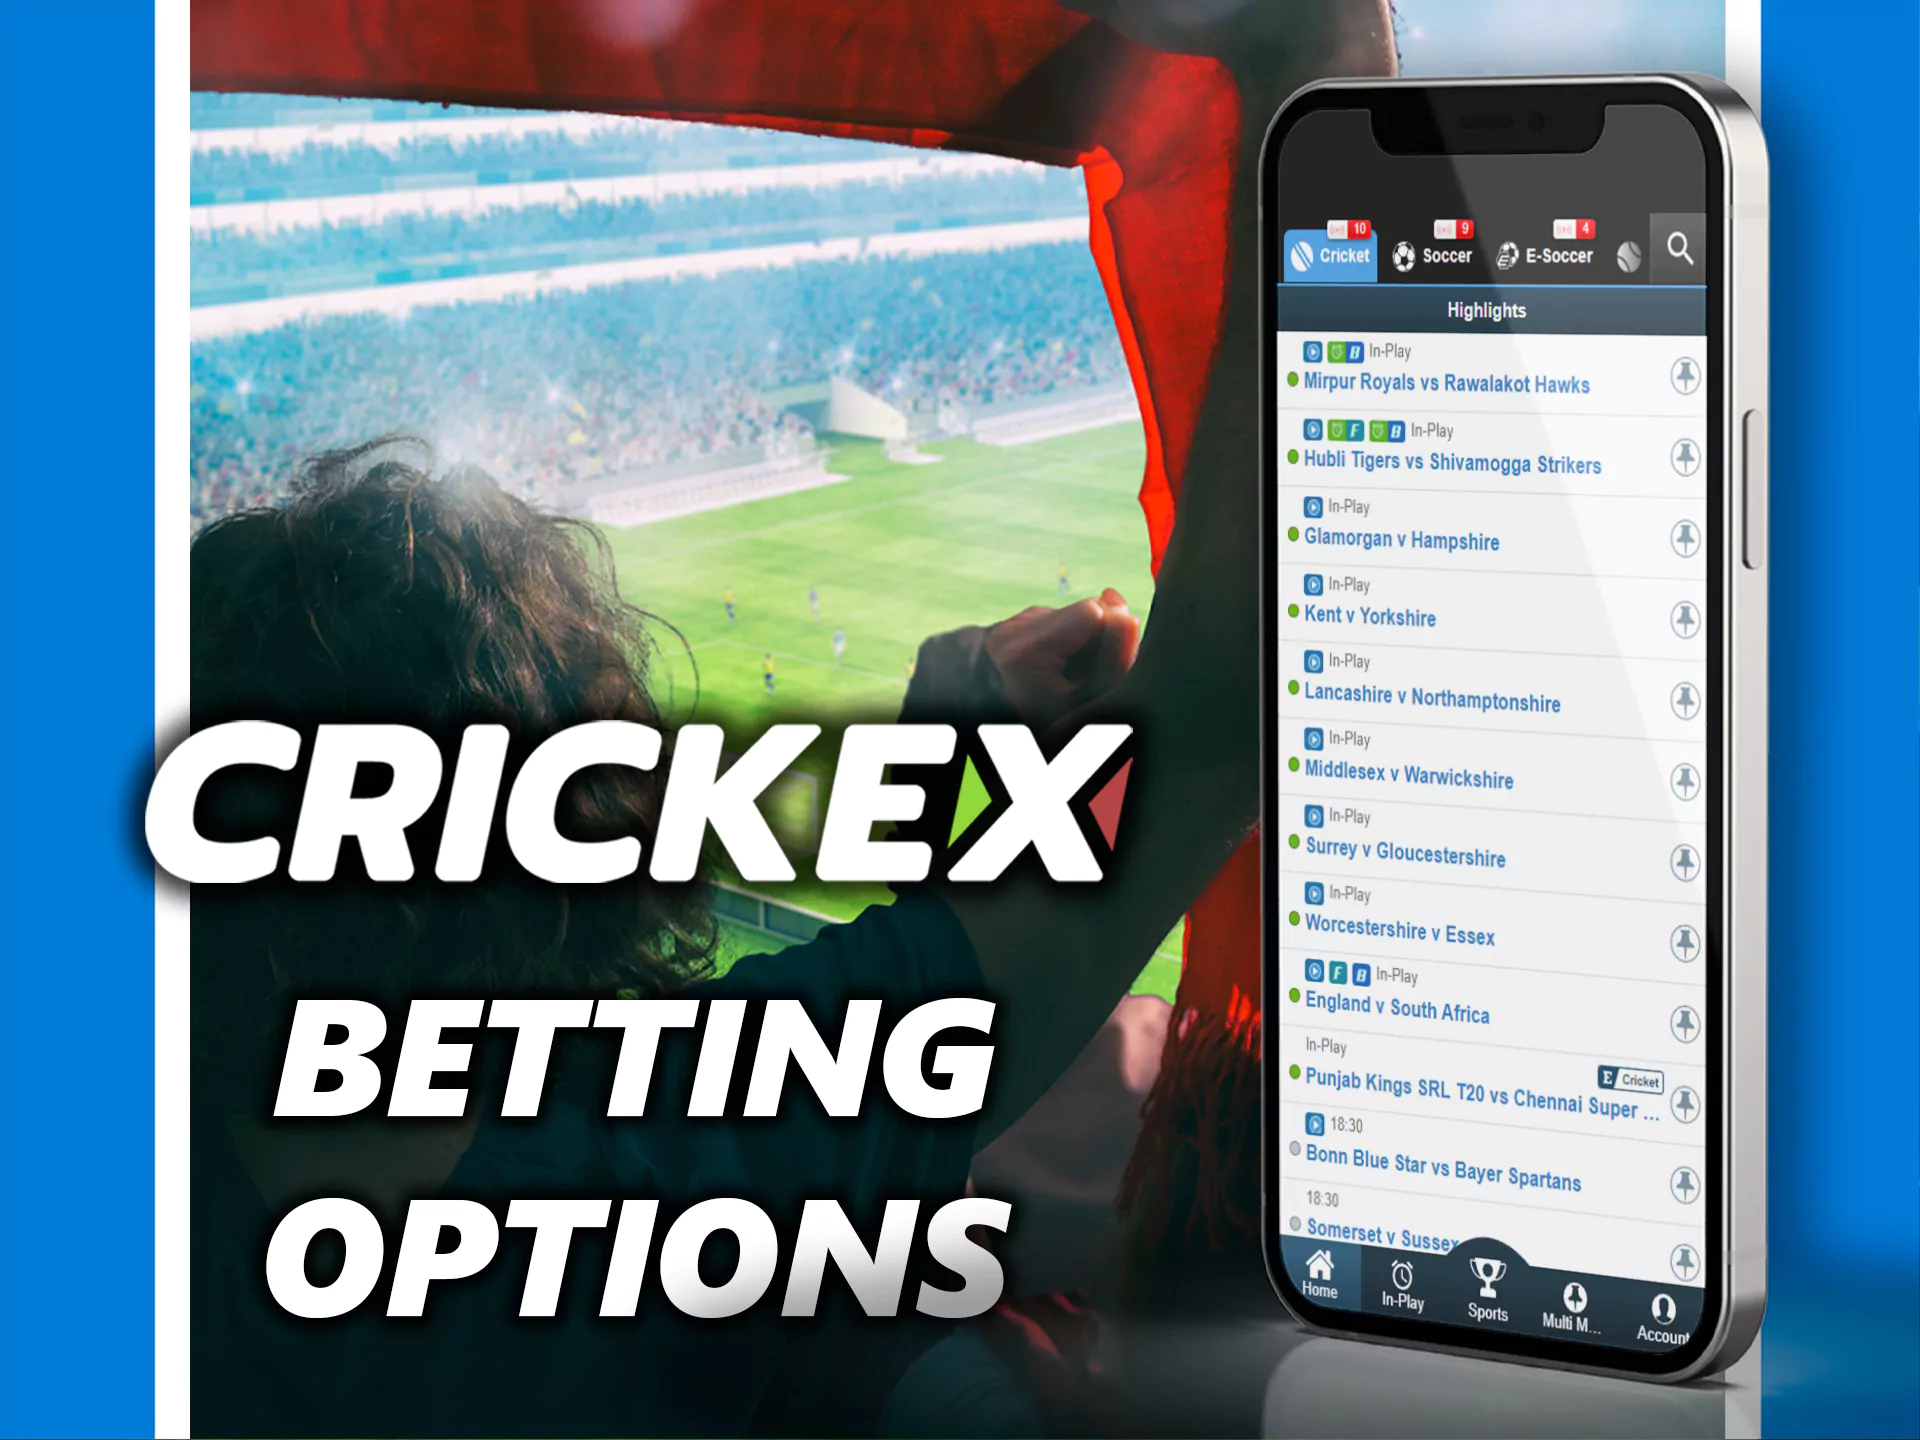 Crickex ऐप विभिन्न प्रकार के स्पोर्ट्स बेटिंग विकल्प प्रदान करता है।